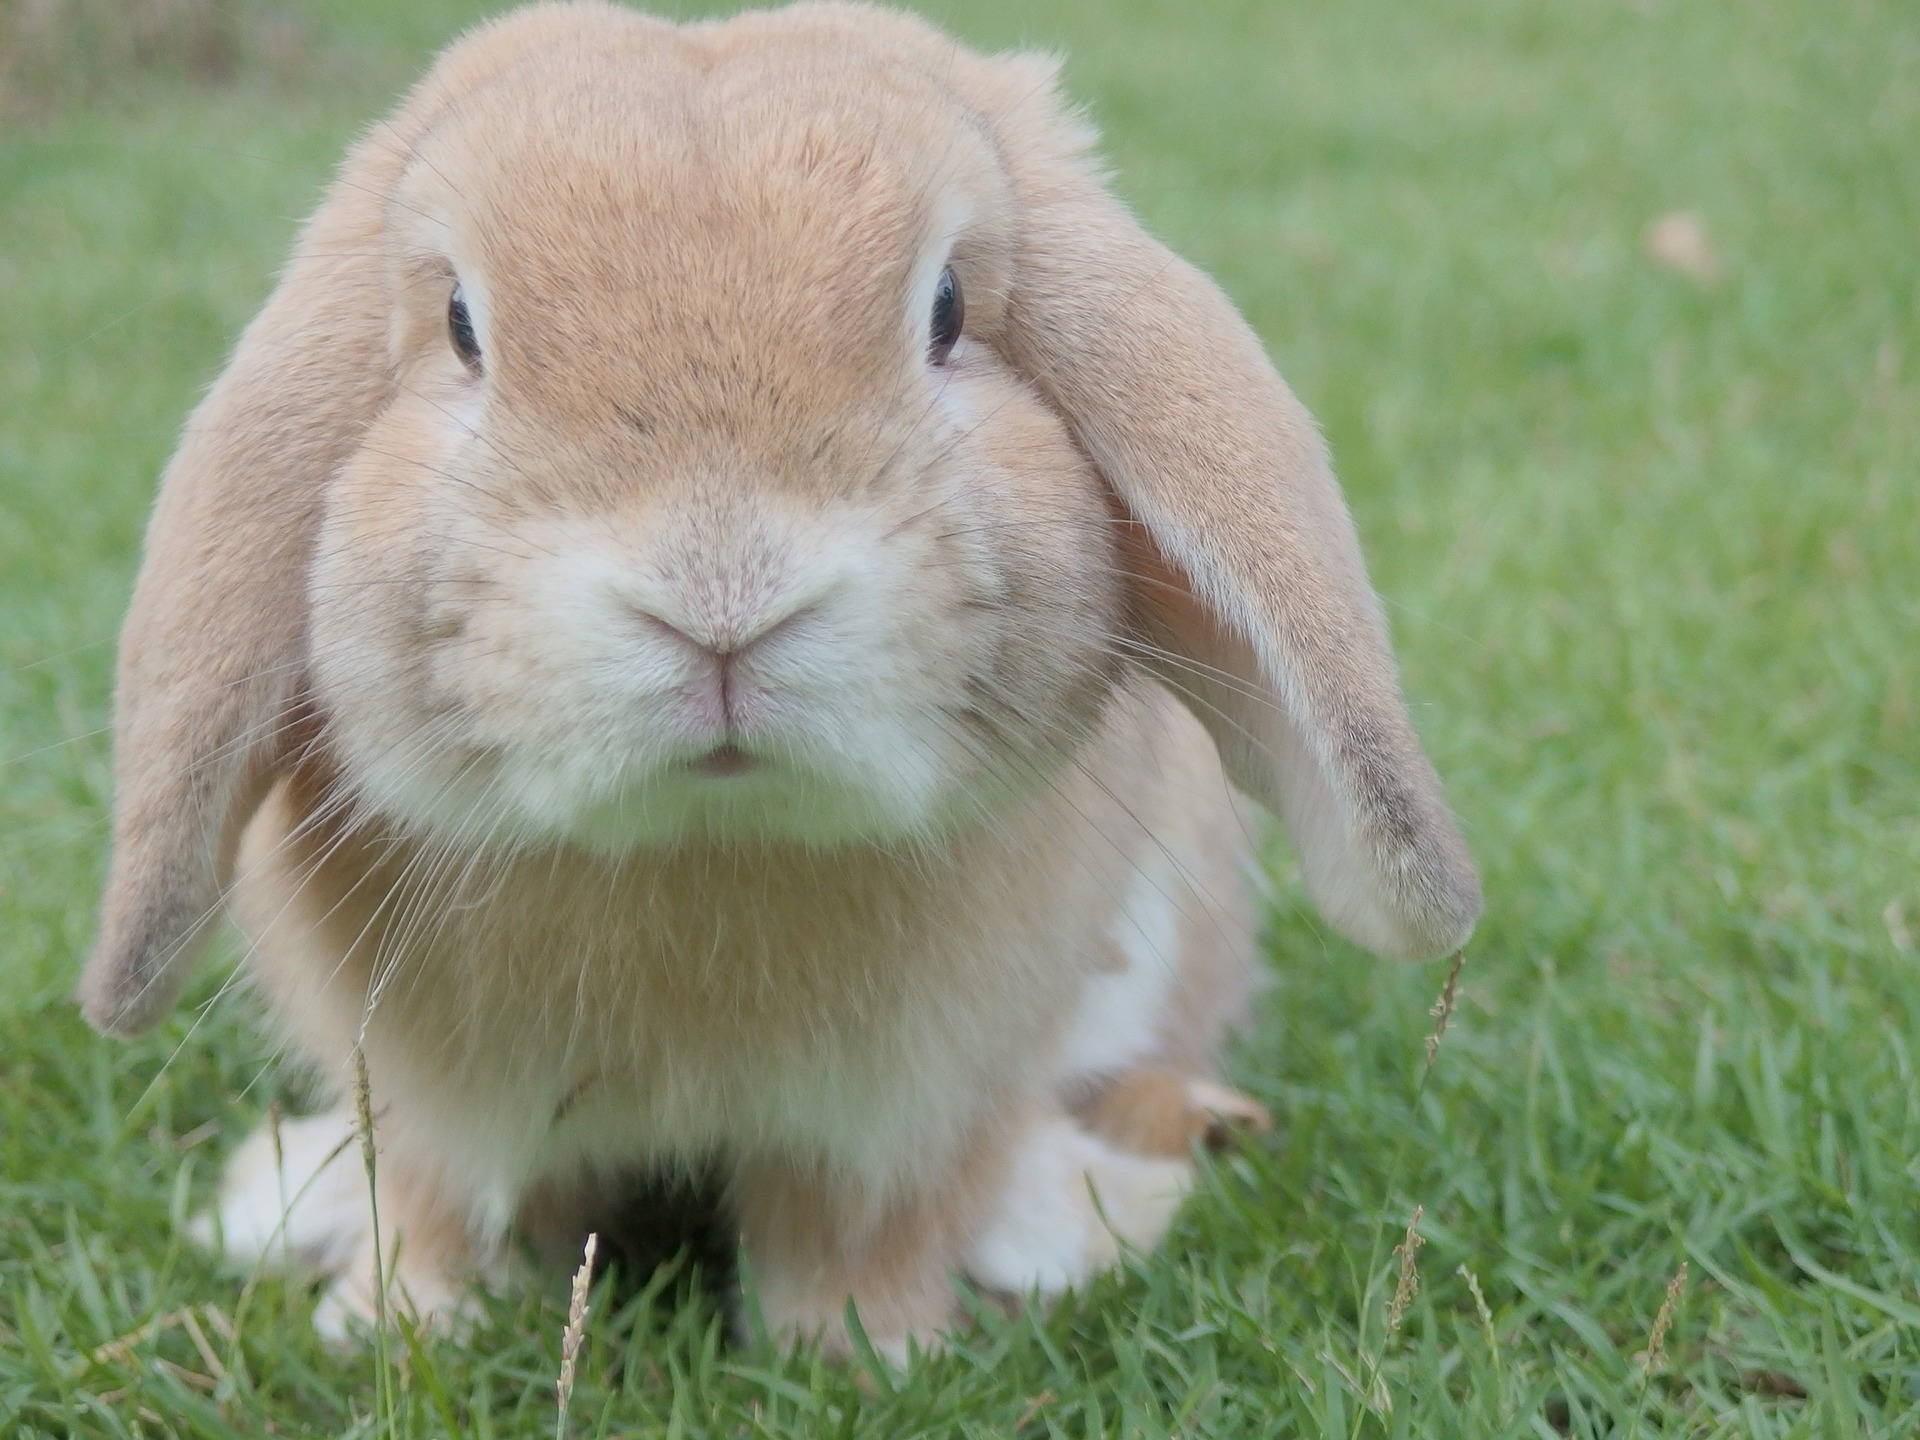 L'adorable lapin plié regarde directement la caméra. Les lapins Mini-Lop aiment beaucoup le contact humain.